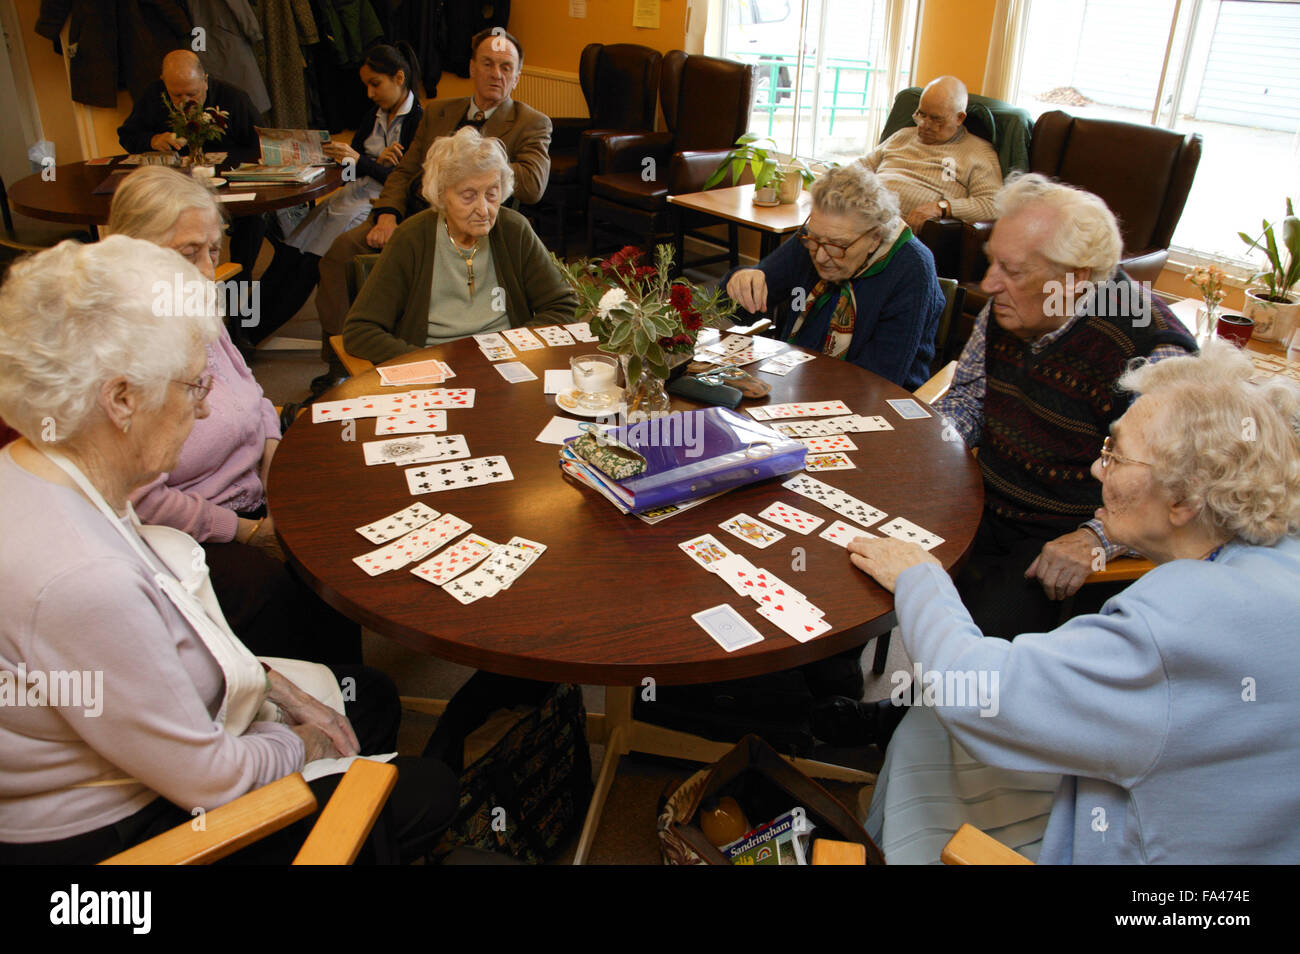 groupe-de-personnes-agees-beneficiant-d-un-jeu-de-carte-a-un-centre-de-jour-fa474e.jpg